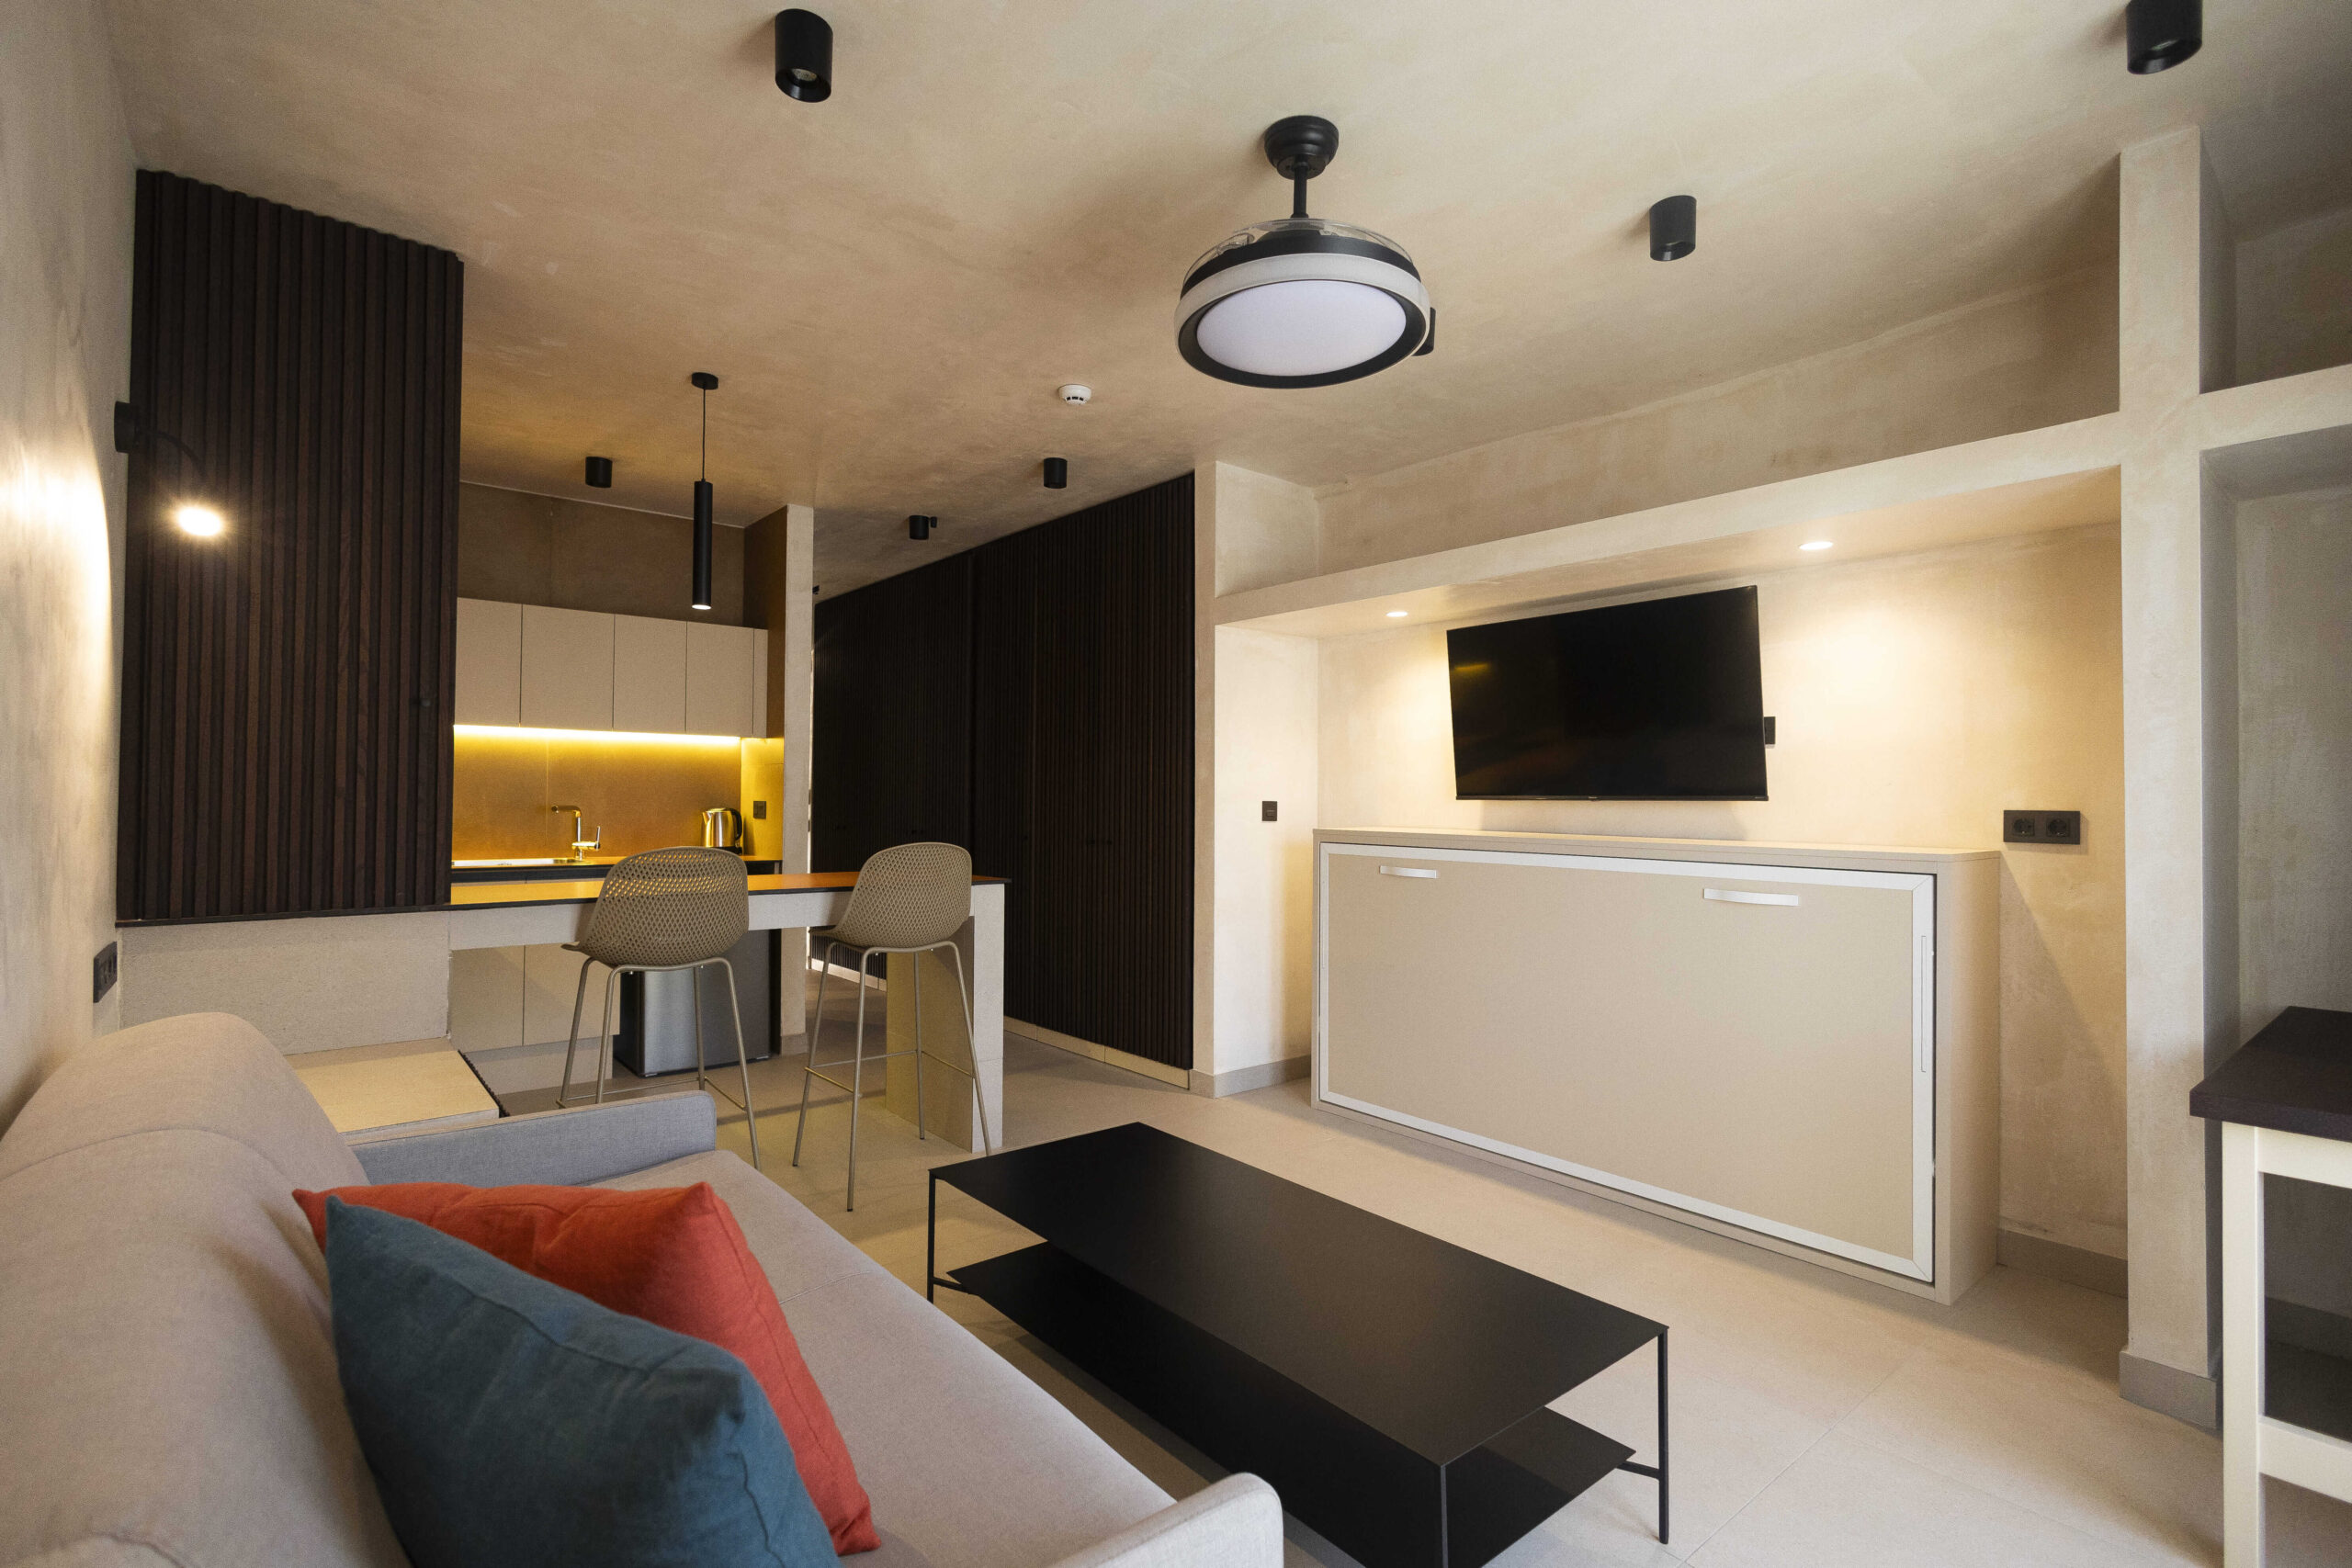 Rent Studio apartment in Tenerife